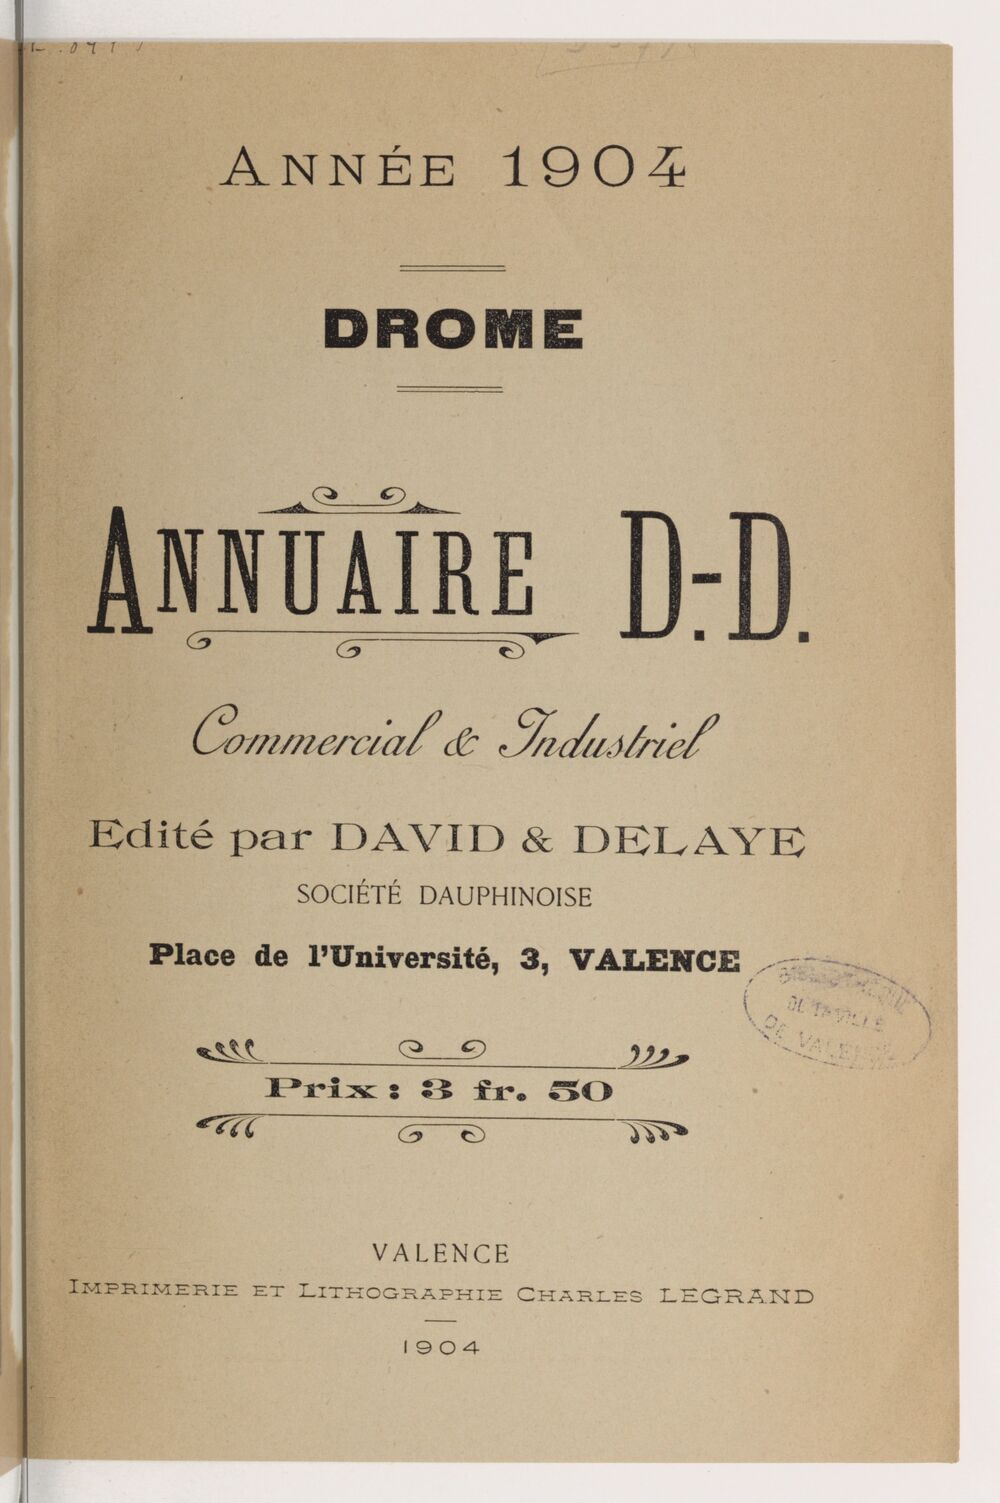 Annuaire D. D. commercial & industriel : Drôme / édité par David & Delaye, société dauphinoise